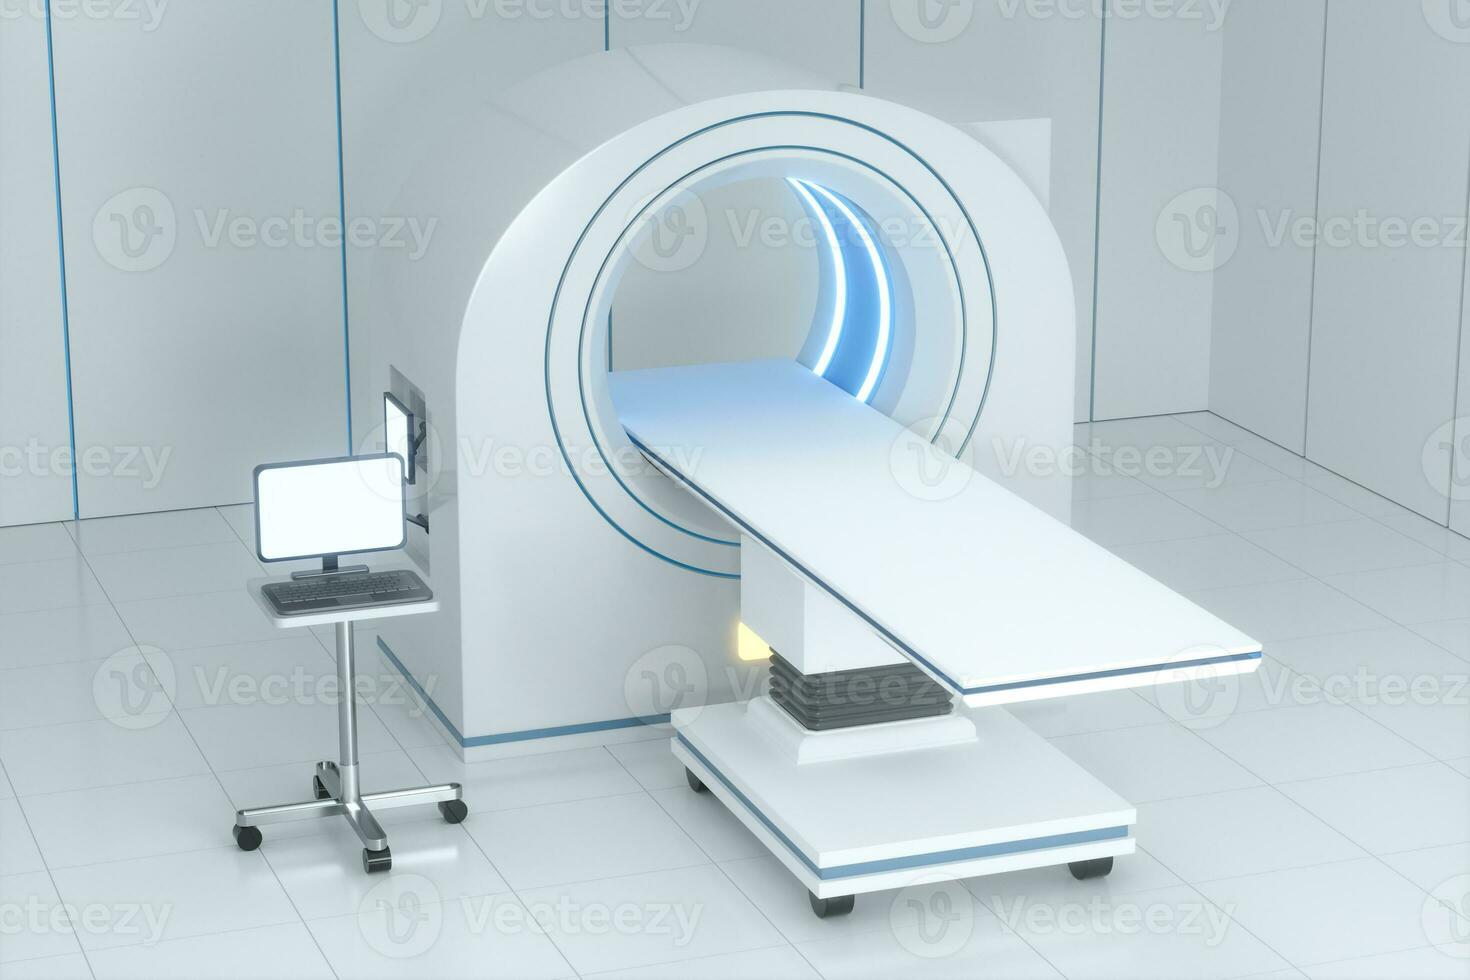 de medisch uitrusting ct machine in de wit leeg kamer, 3d weergave. foto